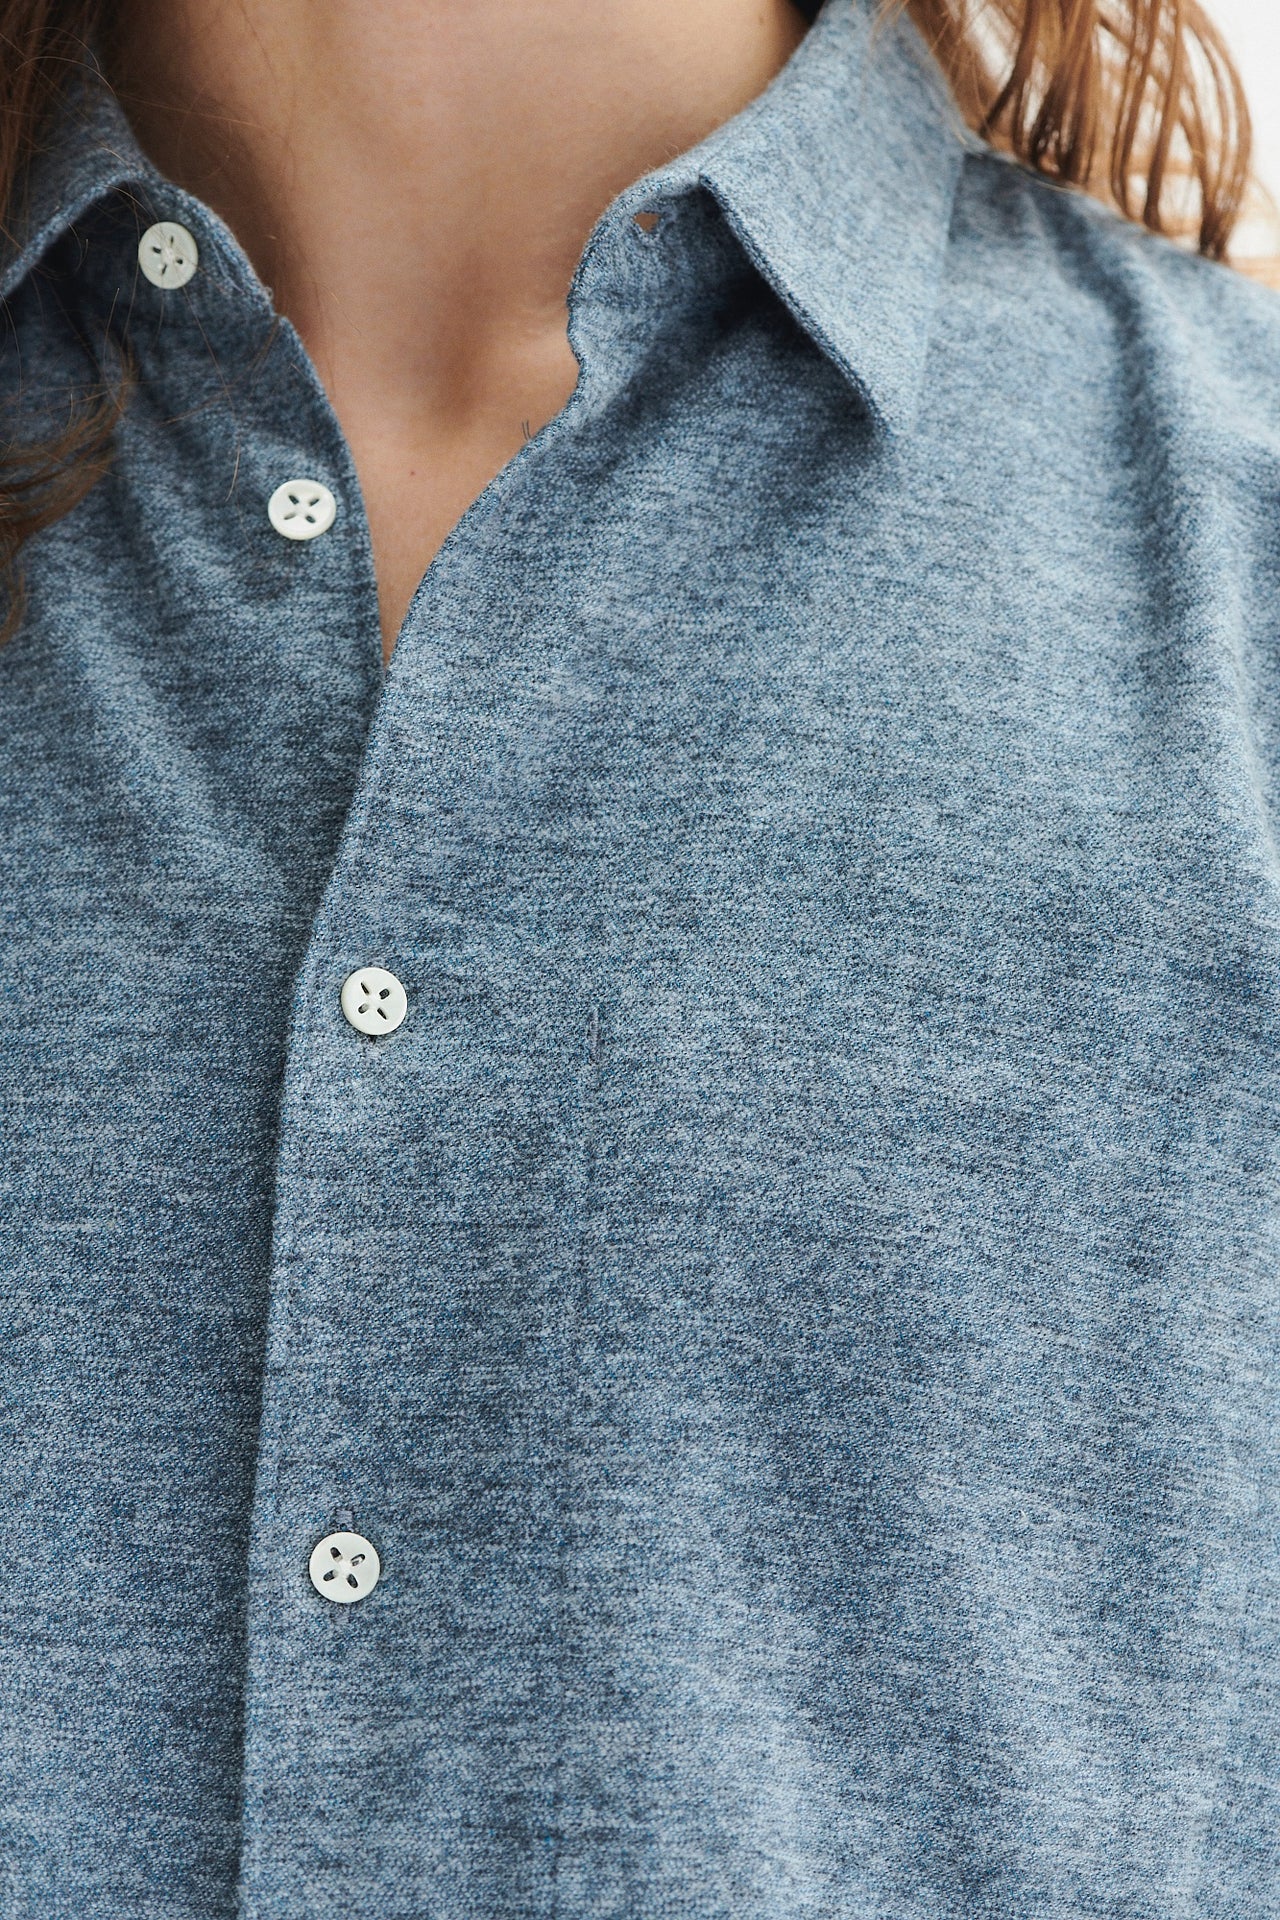 Feel Good Shirt in a Blue Utterly Soft Melange Flannel